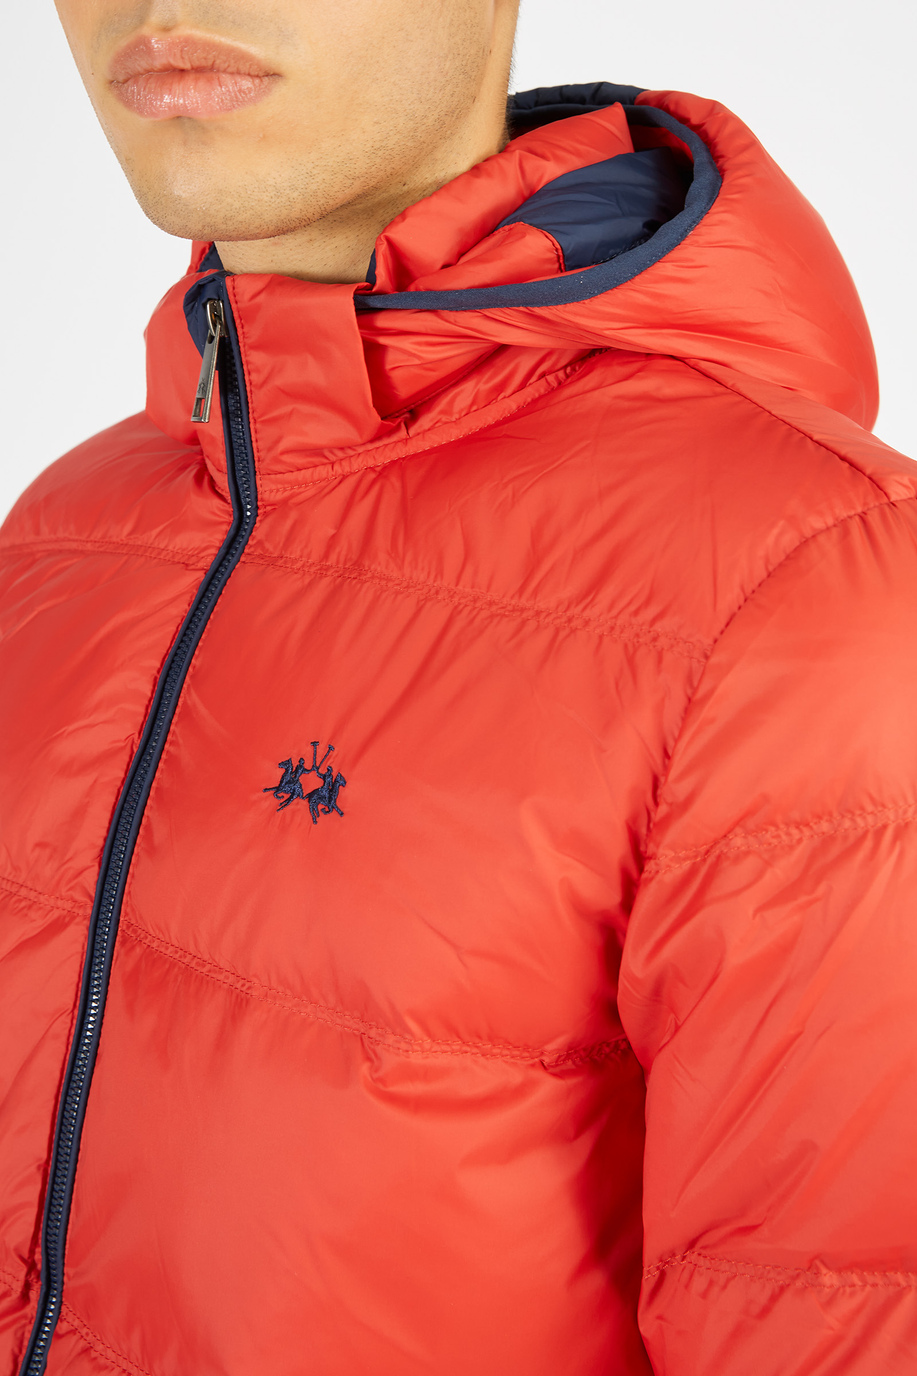 Men’s goose down jacket with regular fit zip closure - Rainproof & Windproof | La Martina - Official Online Shop